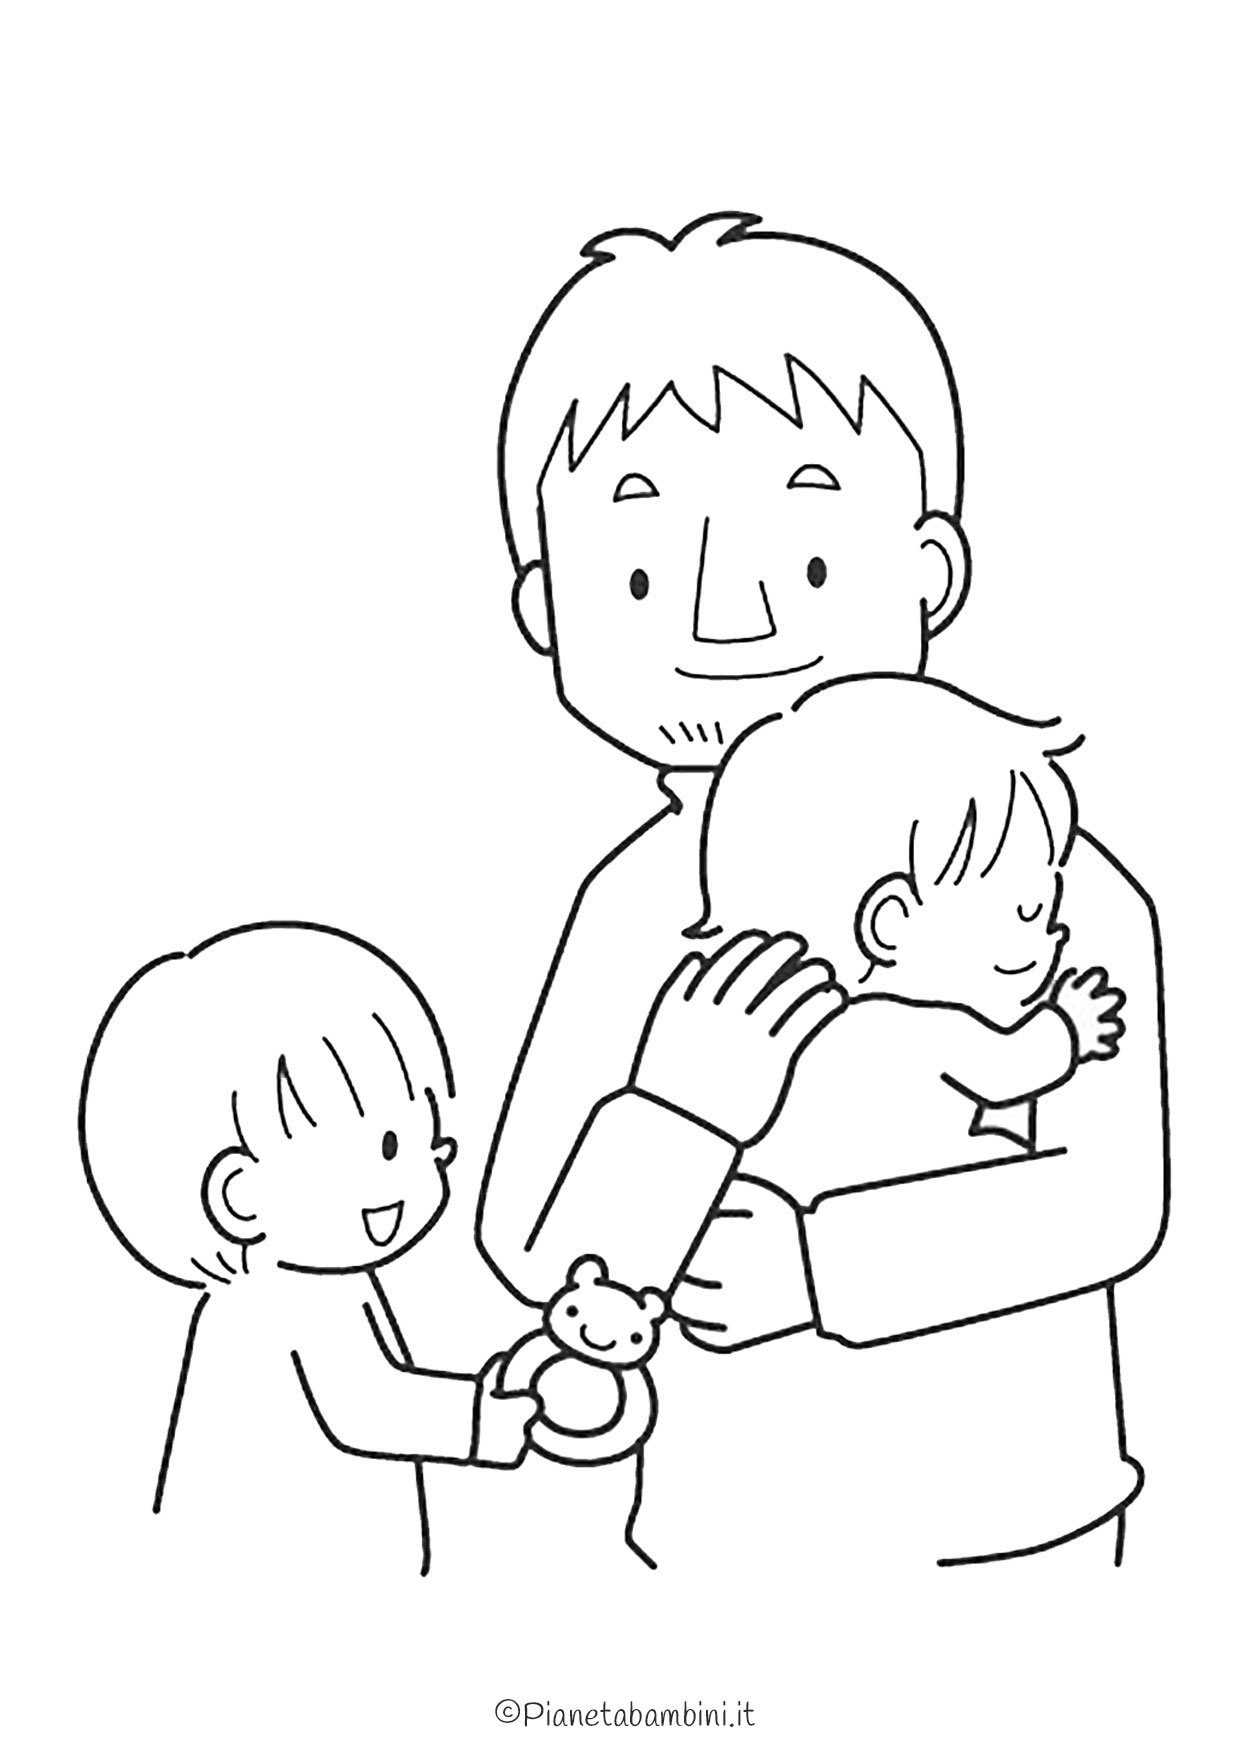 Раскраска папа с ребенком на руках